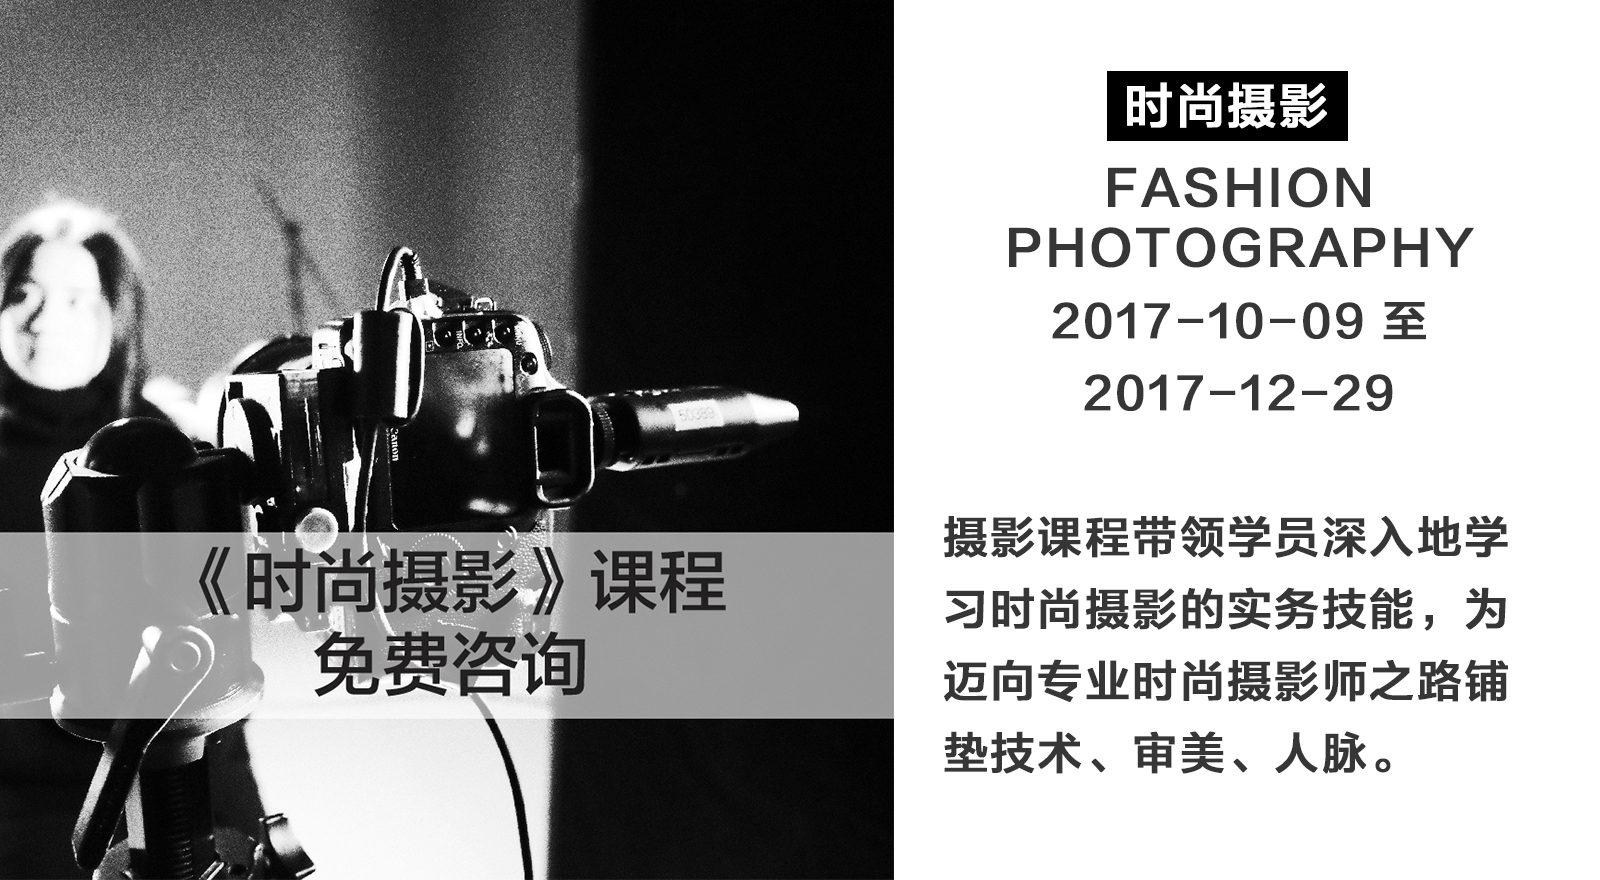 摄影师和造型师们：挤入上海时装周内场工作的宝贵机会在这里！